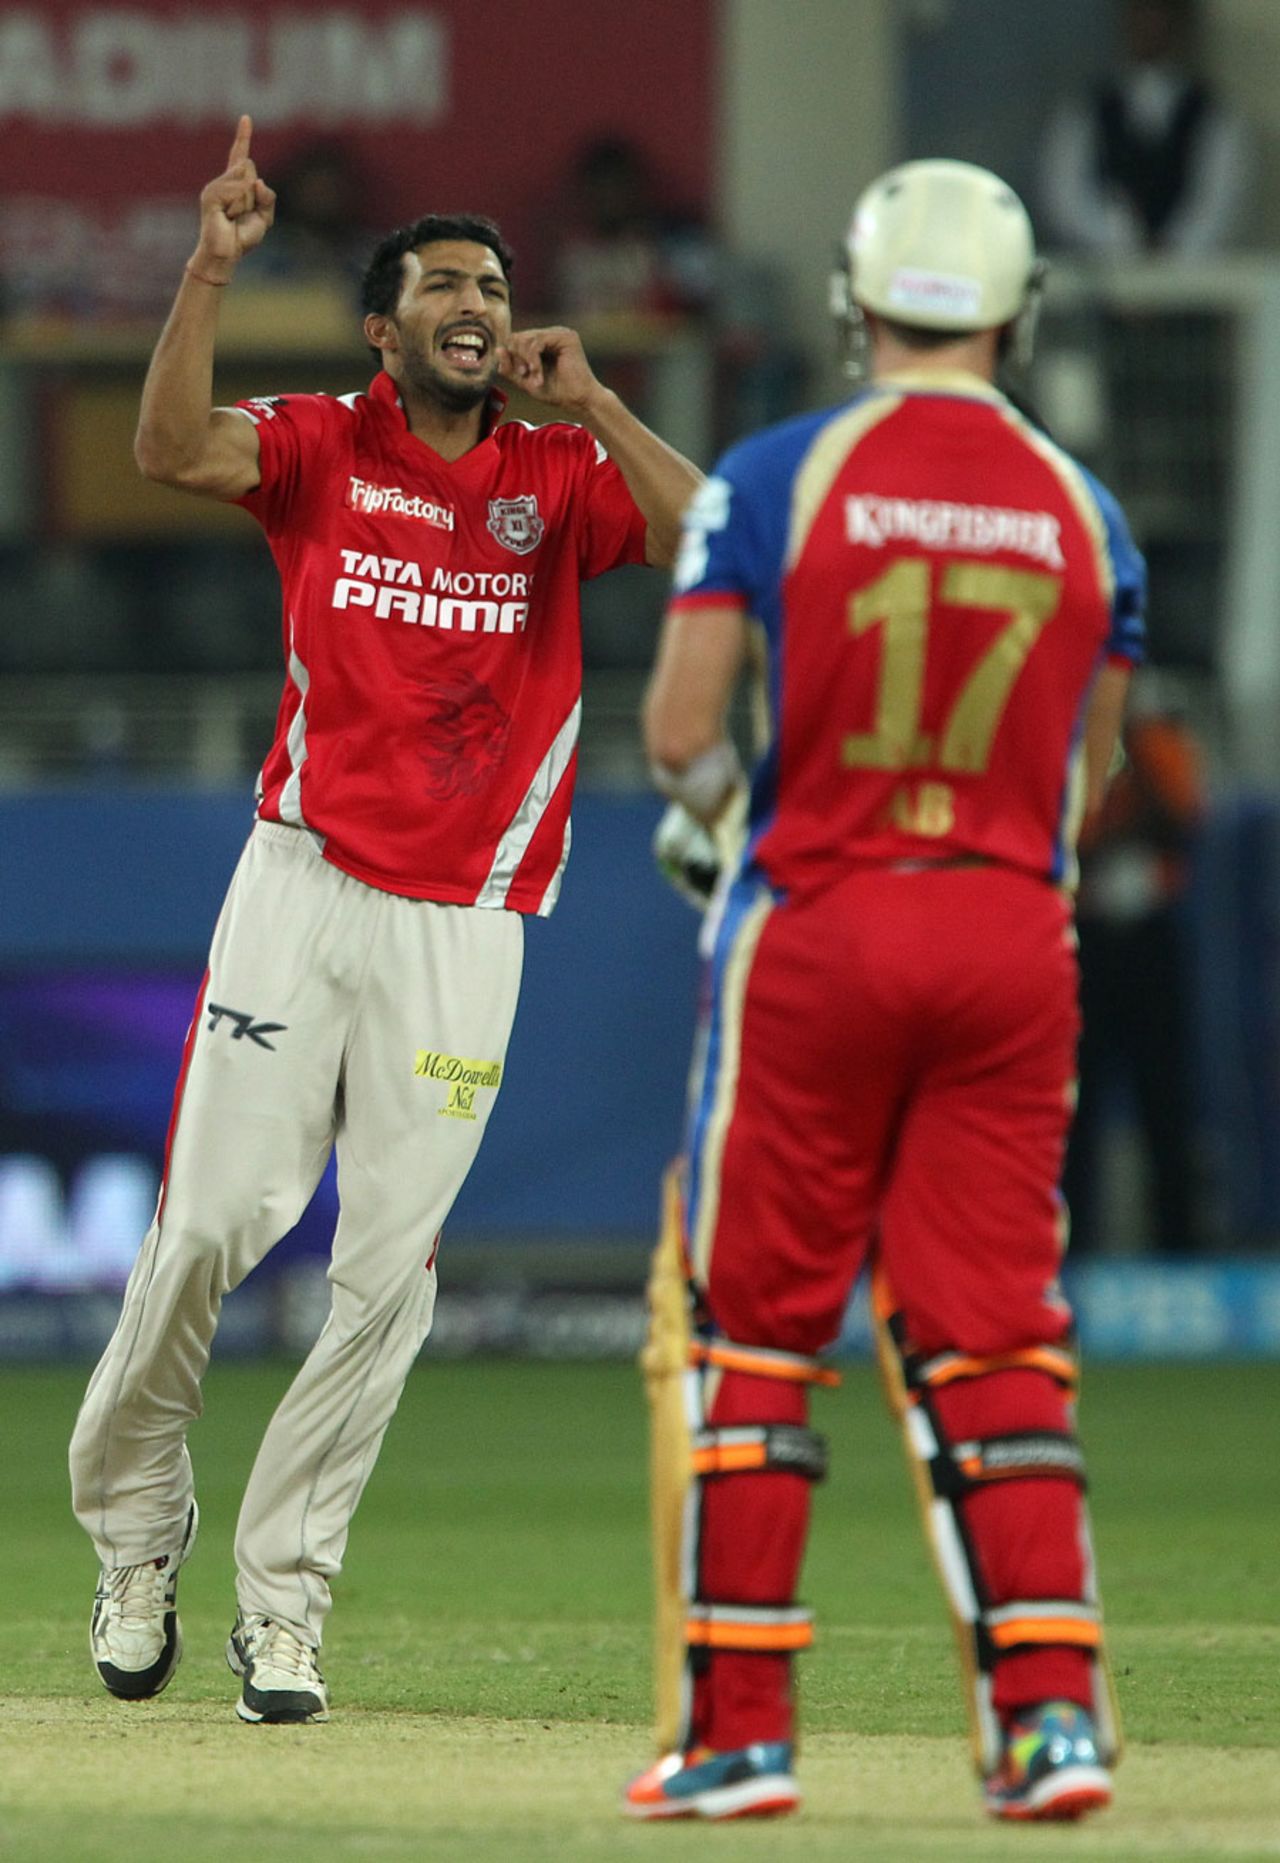 Rishi Dhawan celebrates the wicket of AB de Villiers, Kings XI Punjab v Royal Challengers Bangalore, IPL 2014, Dubai, April 28, 2014